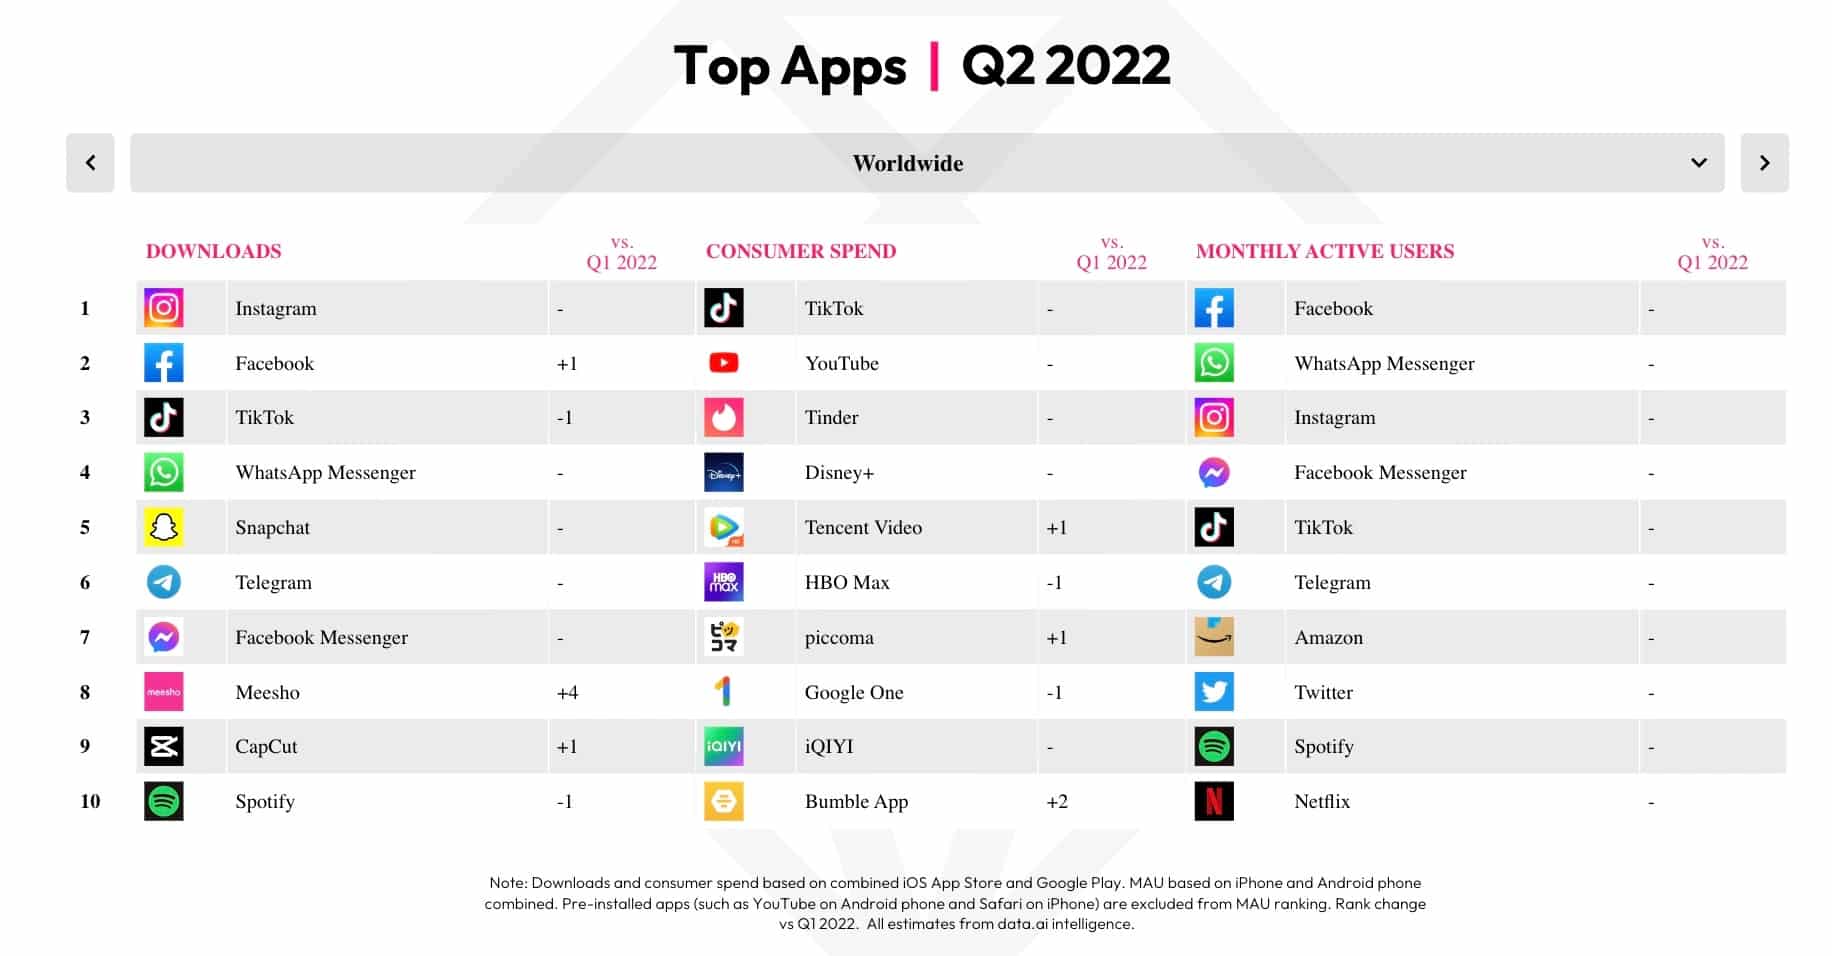 Tempo de uso de apps segundo trimestre 2022